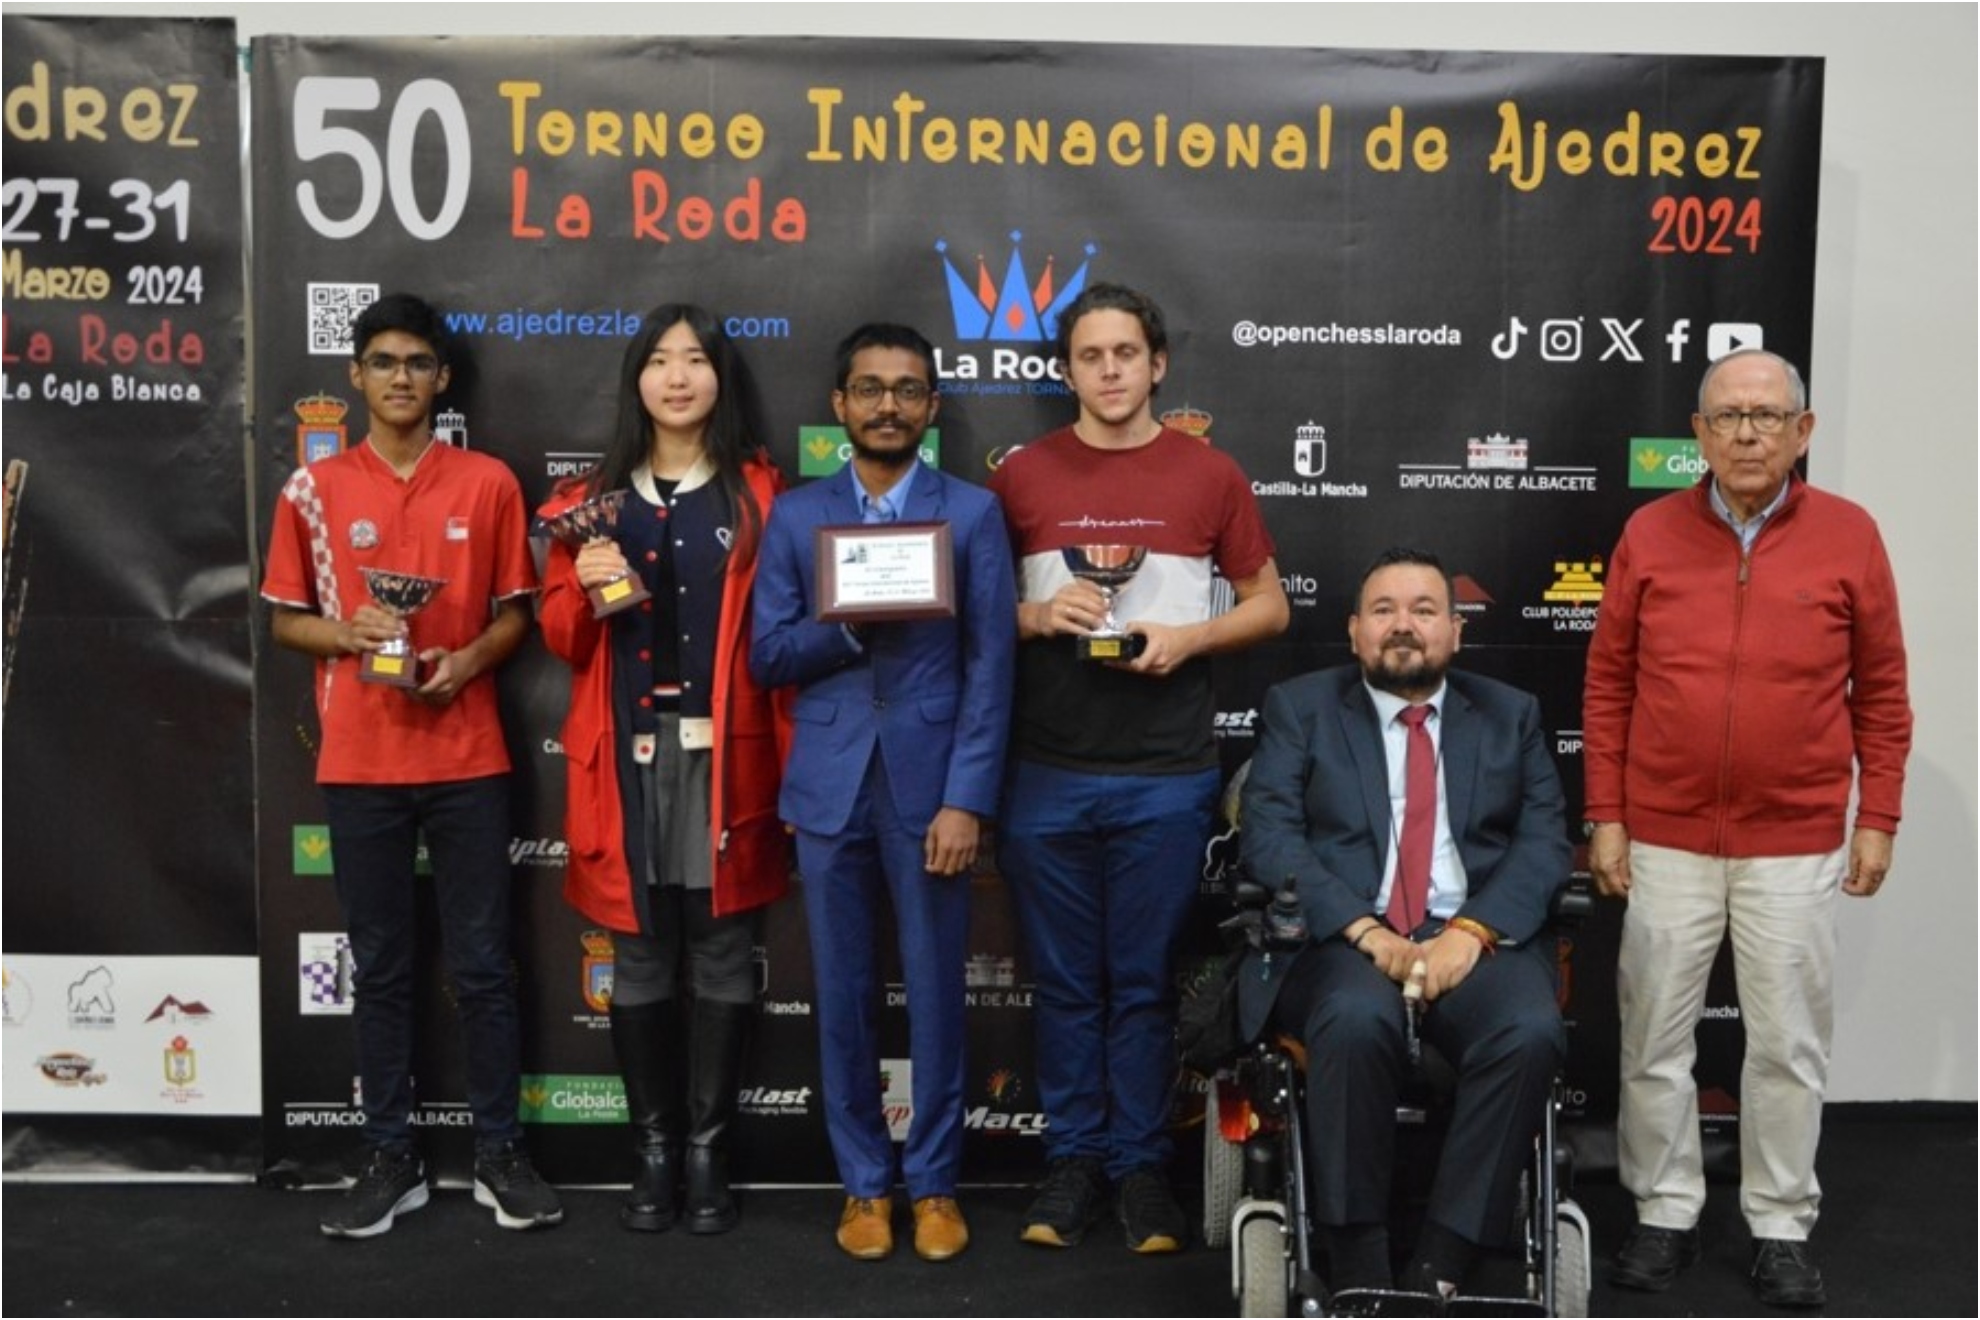 El podio con los ganadores del torneo de ajedrez de La Roda.